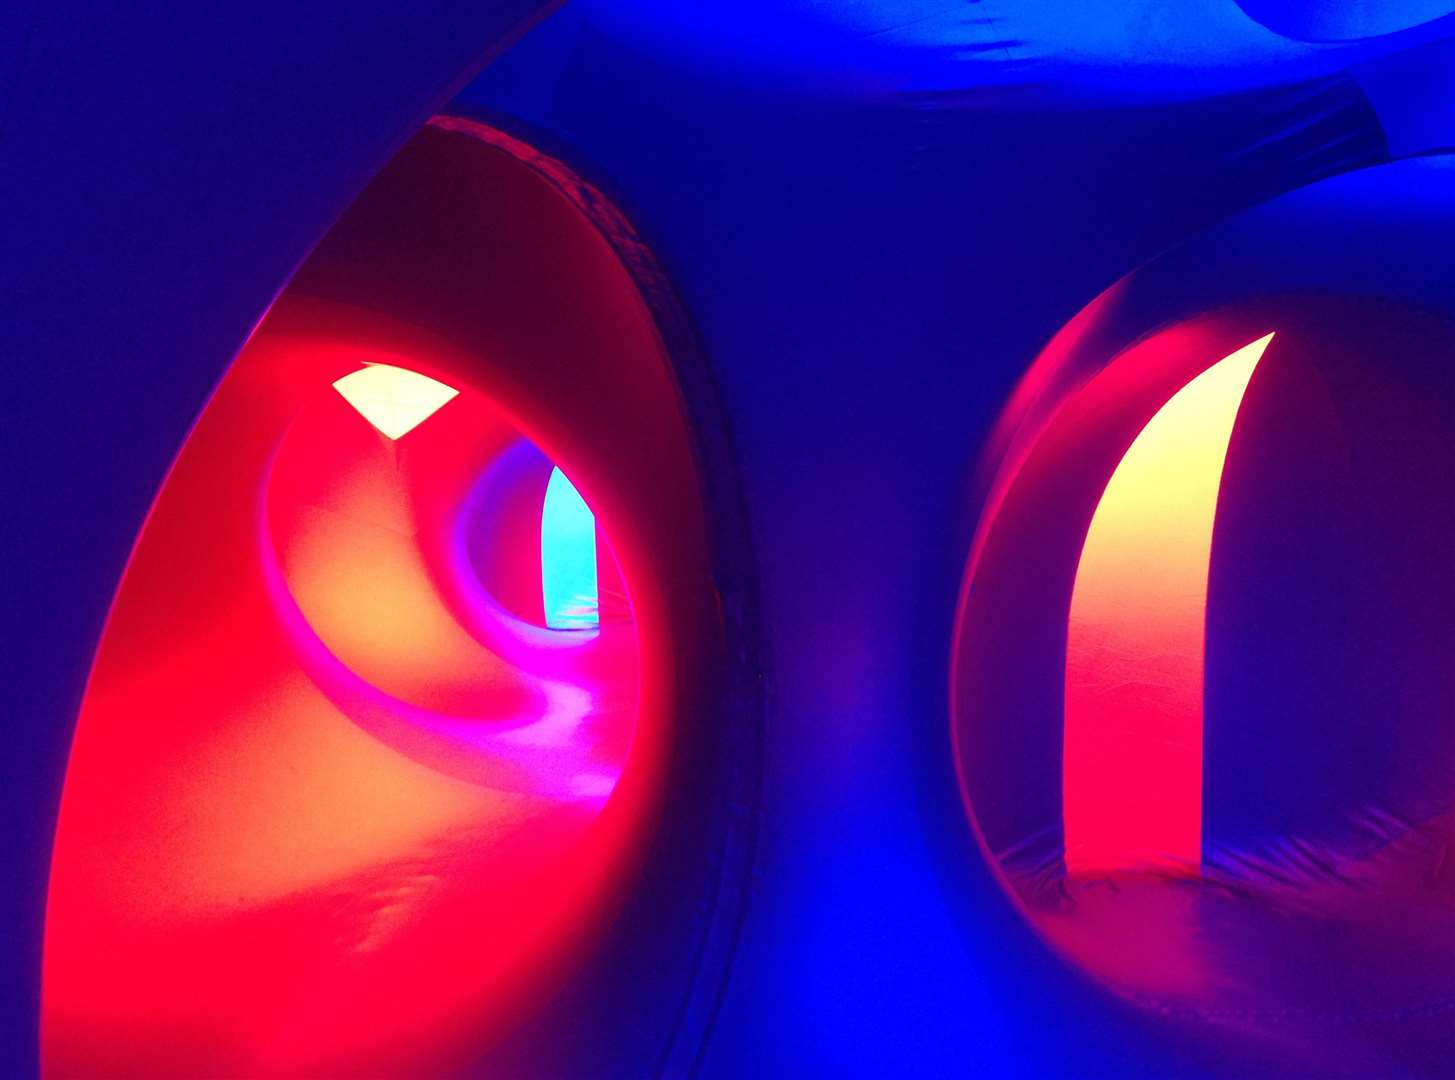 Inside the luminarium